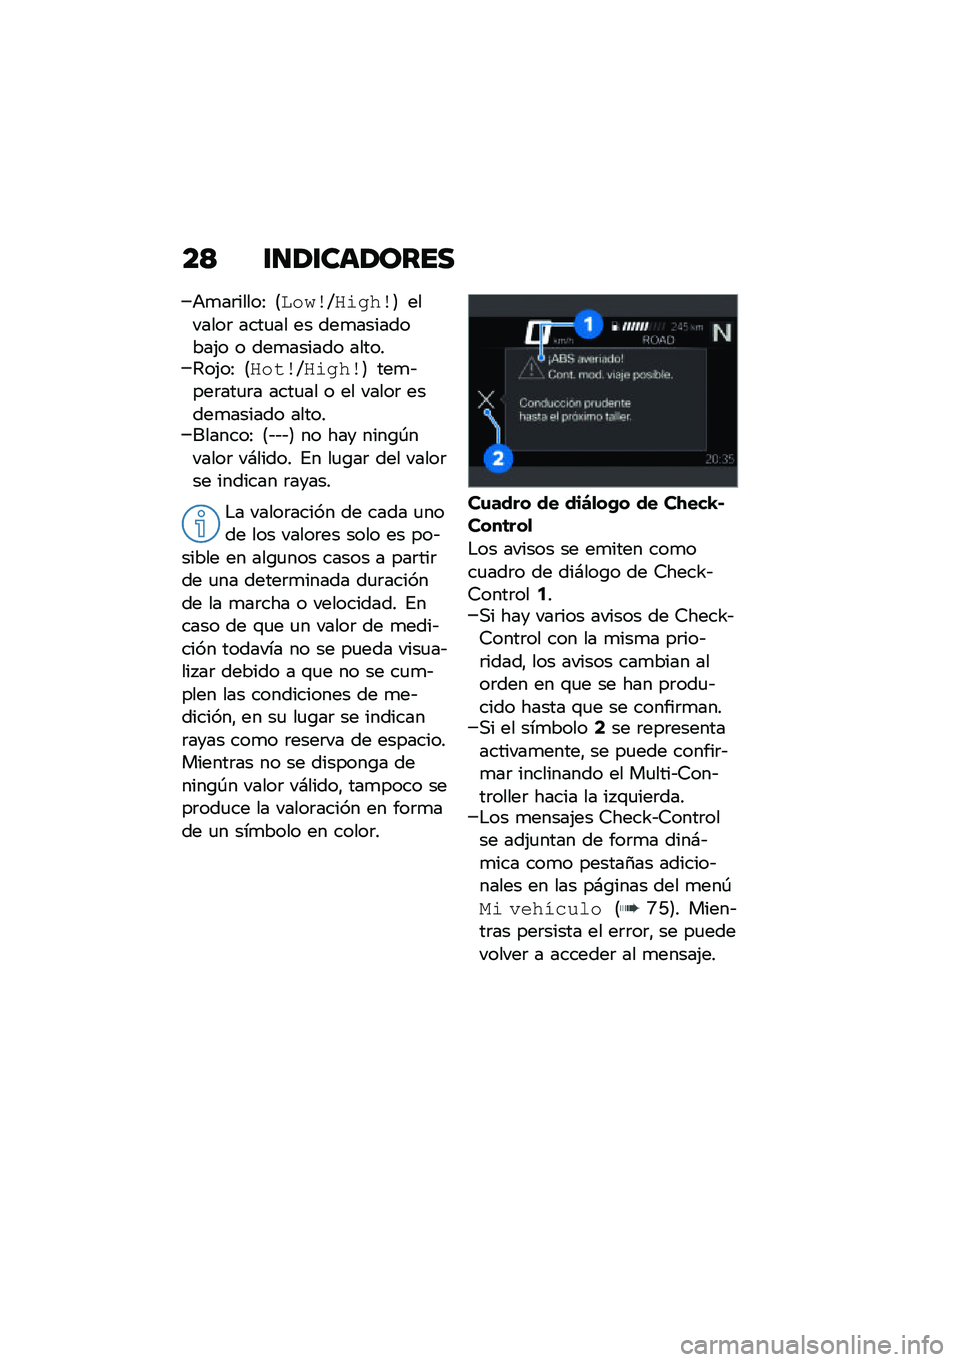 BMW MOTORRAD M 1000 RR 2021  Manual de instrucciones (in Spanish) ��> �\f�
�1�\f���1����
�+�
��	�����: �8�	��
�\b�V��\f�
��\b�9 �������	 ����
�� �� ���
���������(� � ���
������ ������4��(��: �8����\b�V��\f�
